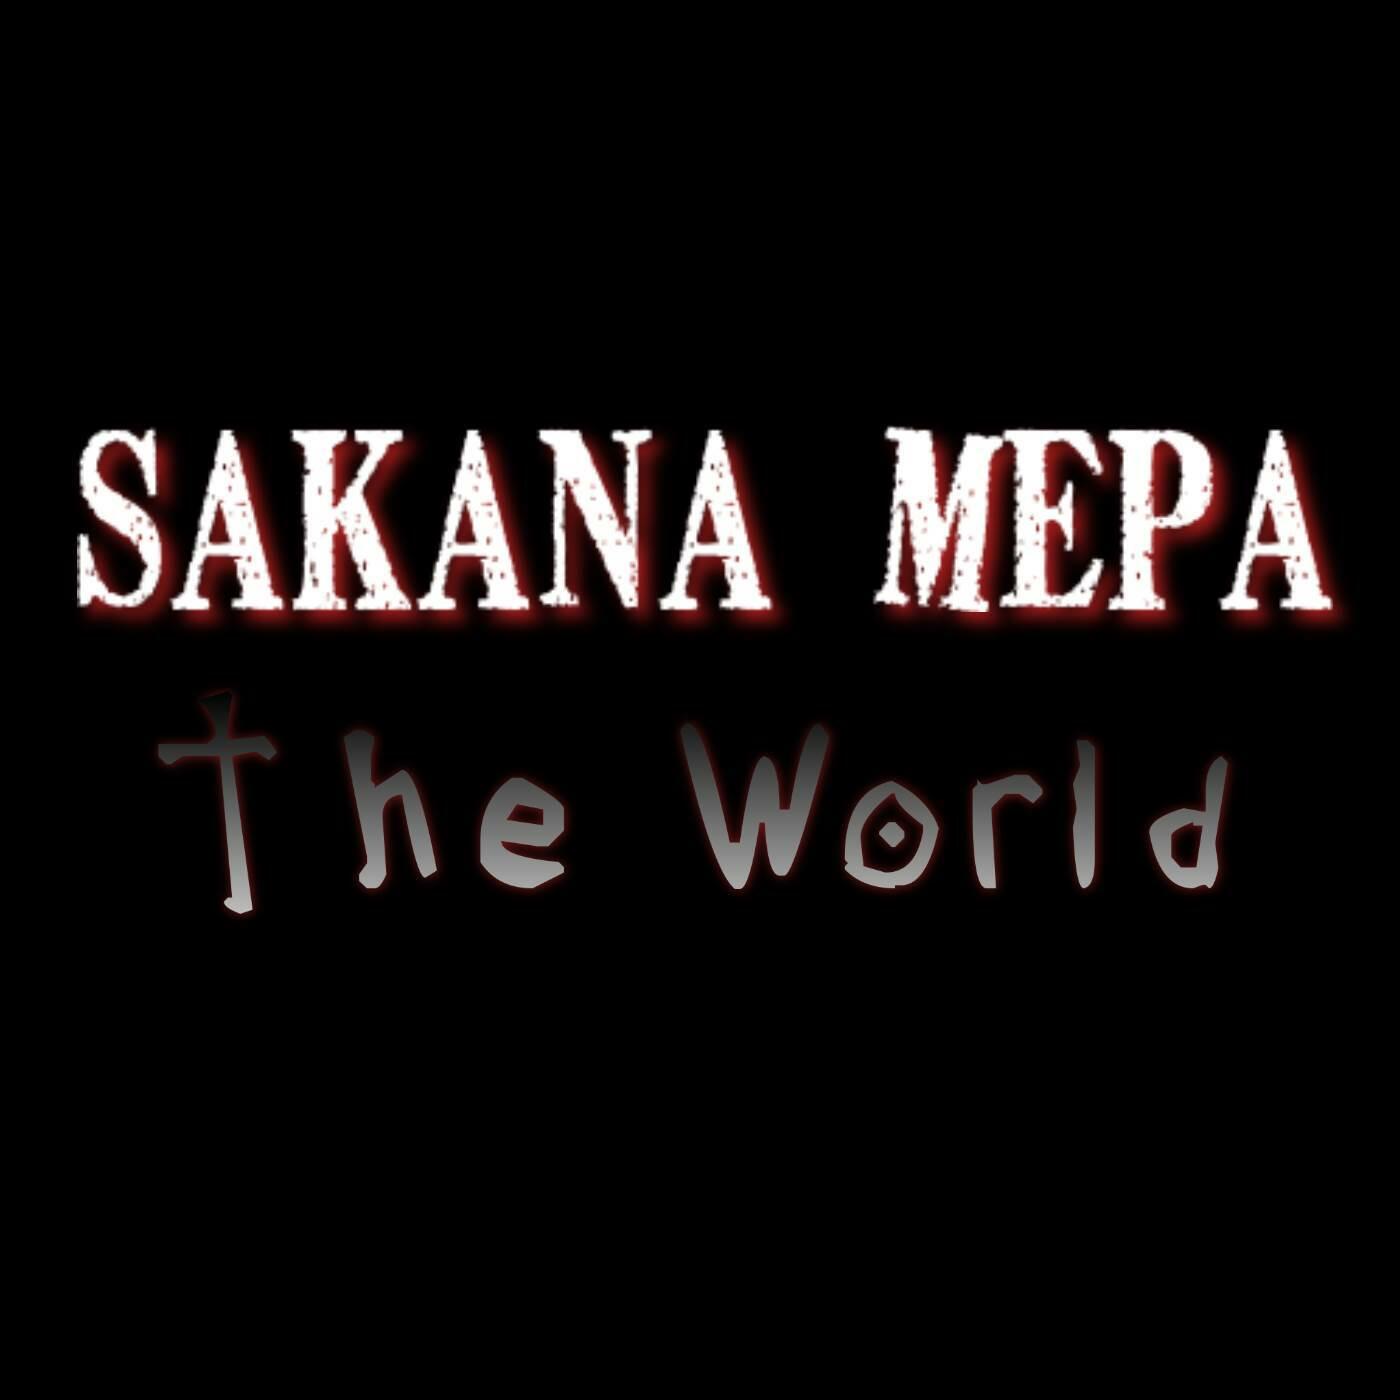 Sakana Mepa Radio Listen To Free Music Get The Latest Info Iheartradio